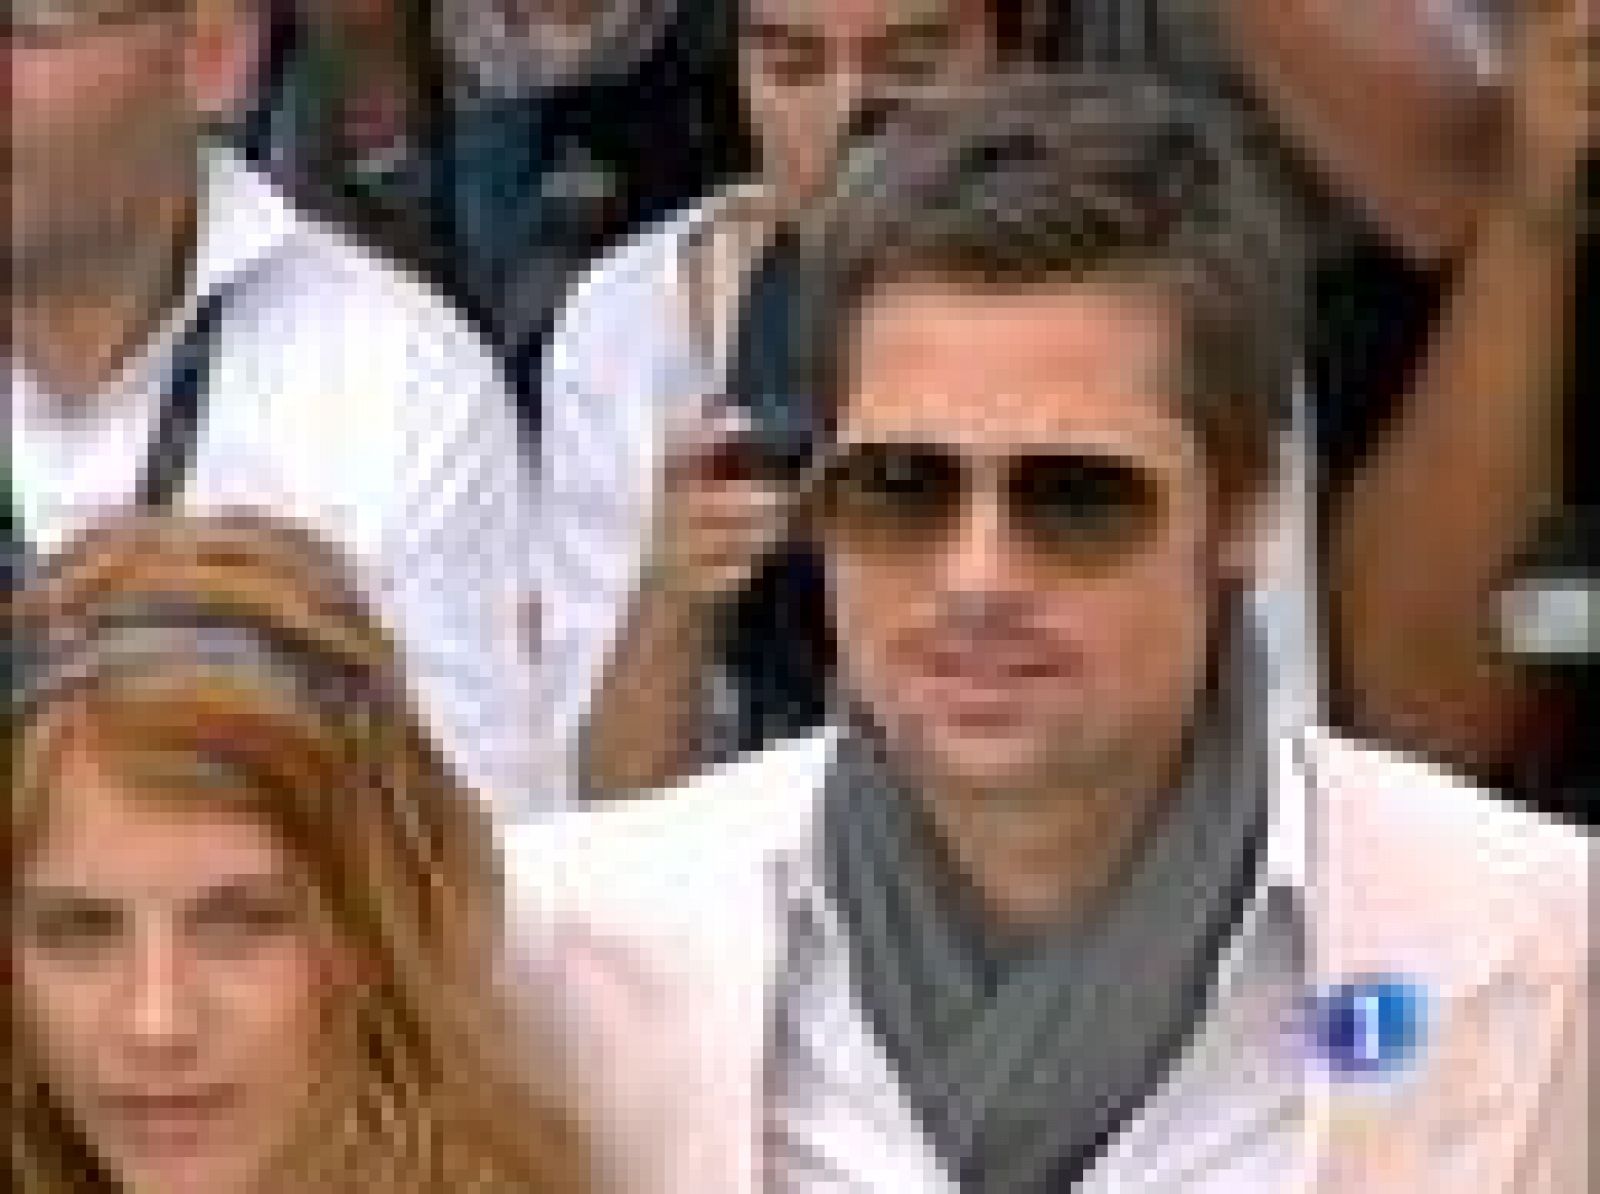 El festival de Cannes se ha despertado hoy con la buena sensación que han dejado "Los abrazos rotos" de Pedro Almodóvar y con la presencia de una de las estrellas más deseadas de los últimos años: Brad Pitt. El actor es el principal reclamo de la nueva película de Tarantino.